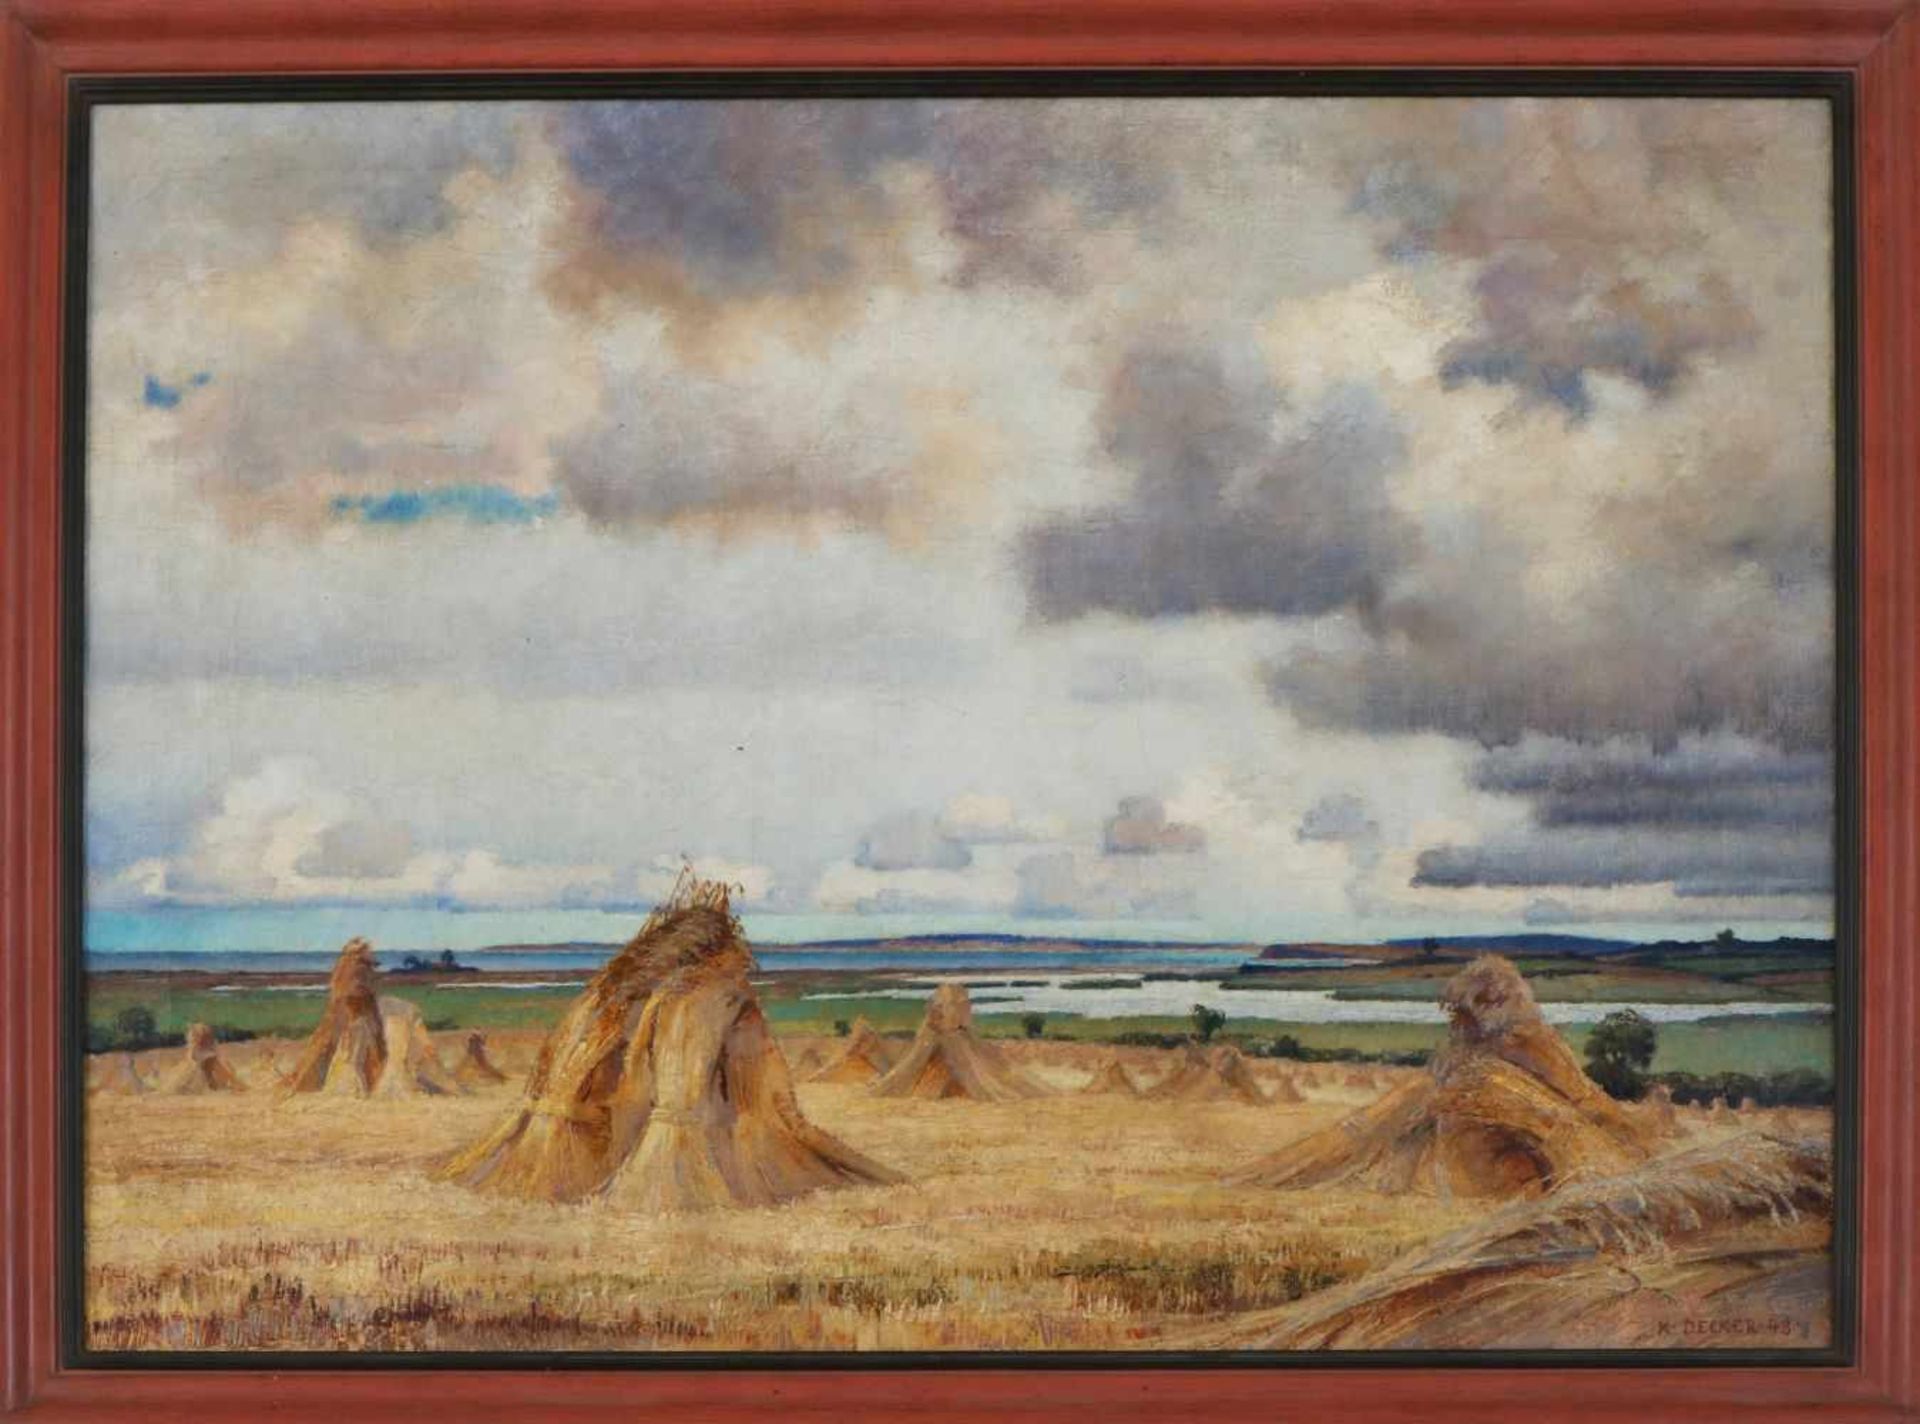 KARL DECKER (1906 Friedland - 2003 Stöfs)Öl auf Leinwand, ¨Weite norddeutsche Landschaft mit